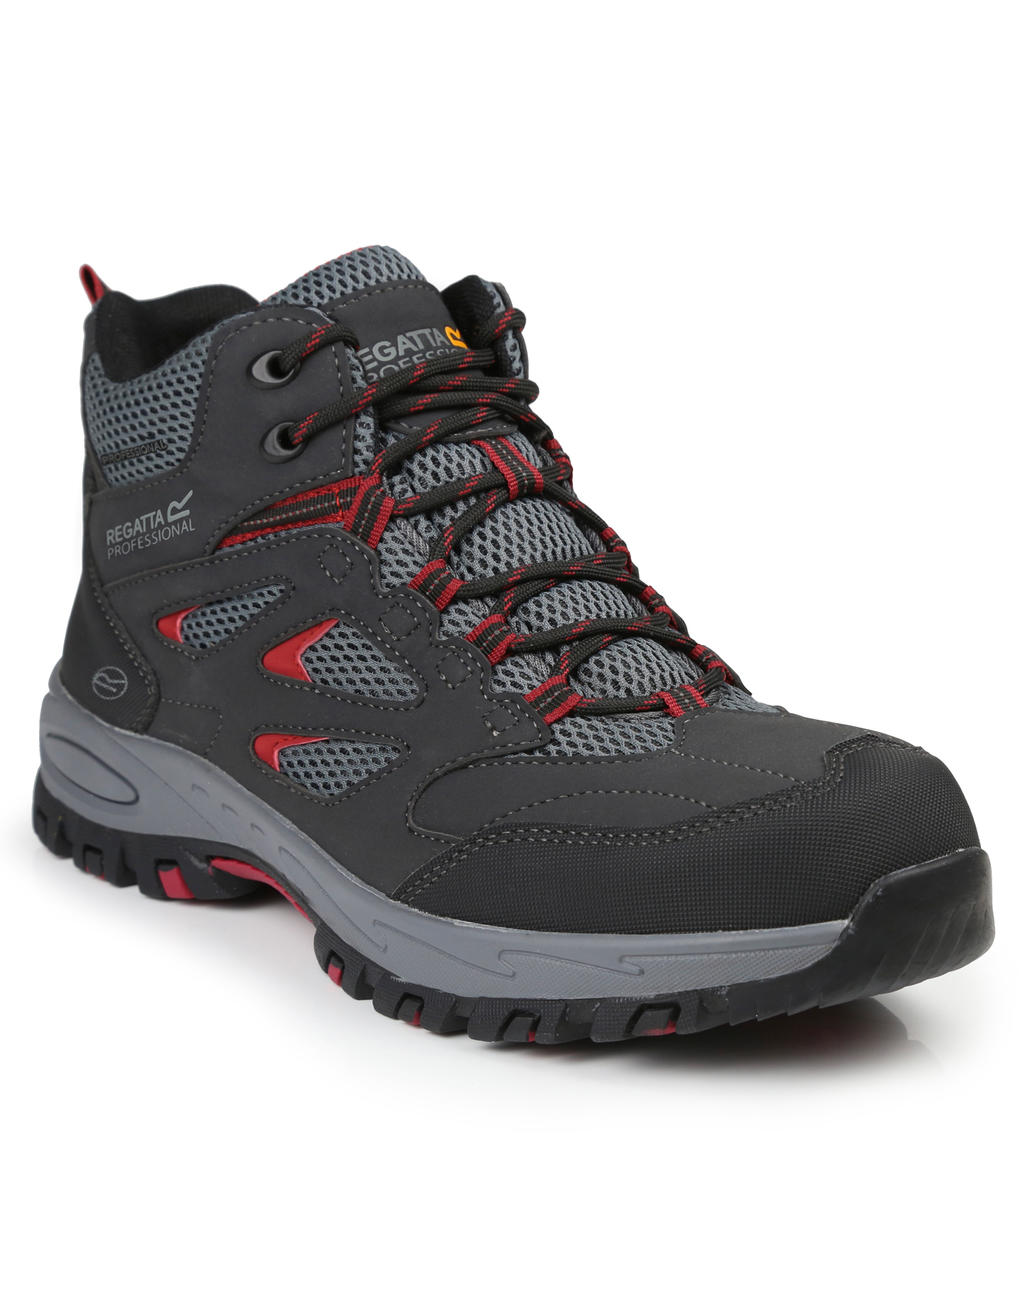 Pracovný obuv Mudstone Safety Hiker - black/granite